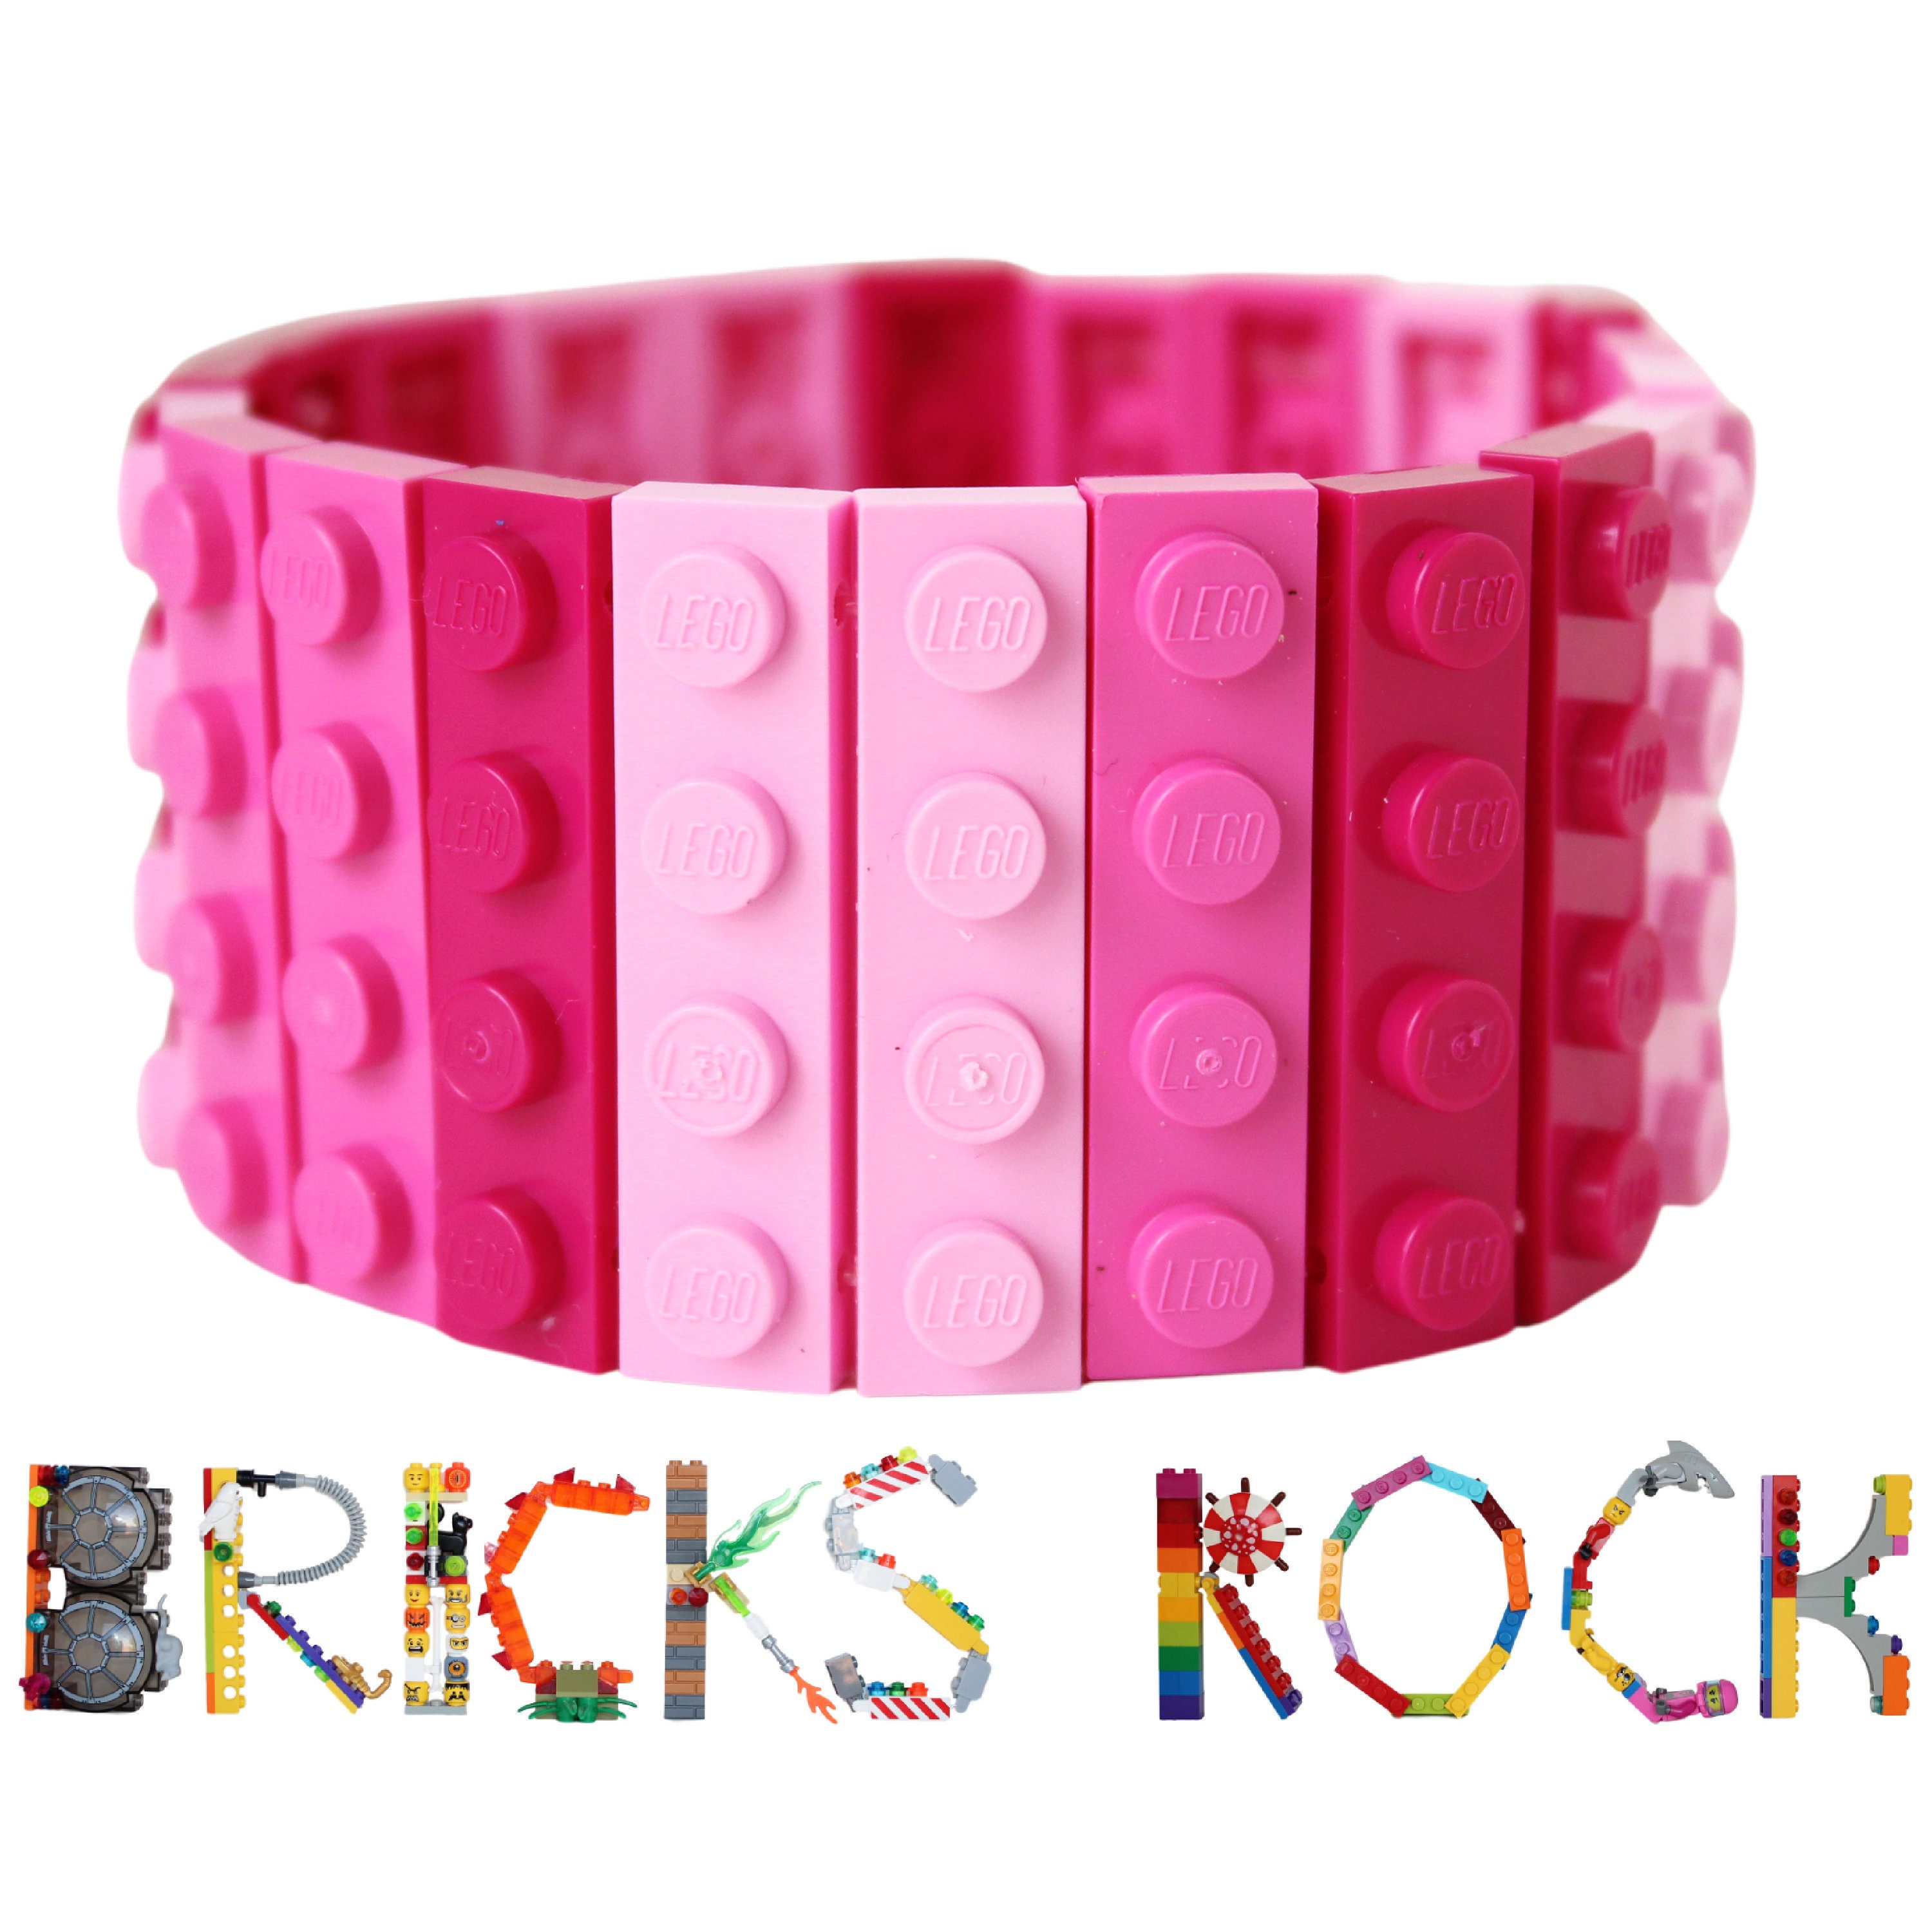 LEGO Piezas y piezas: 20 ladrillos rosa oscuro (morado brillante) 1x4